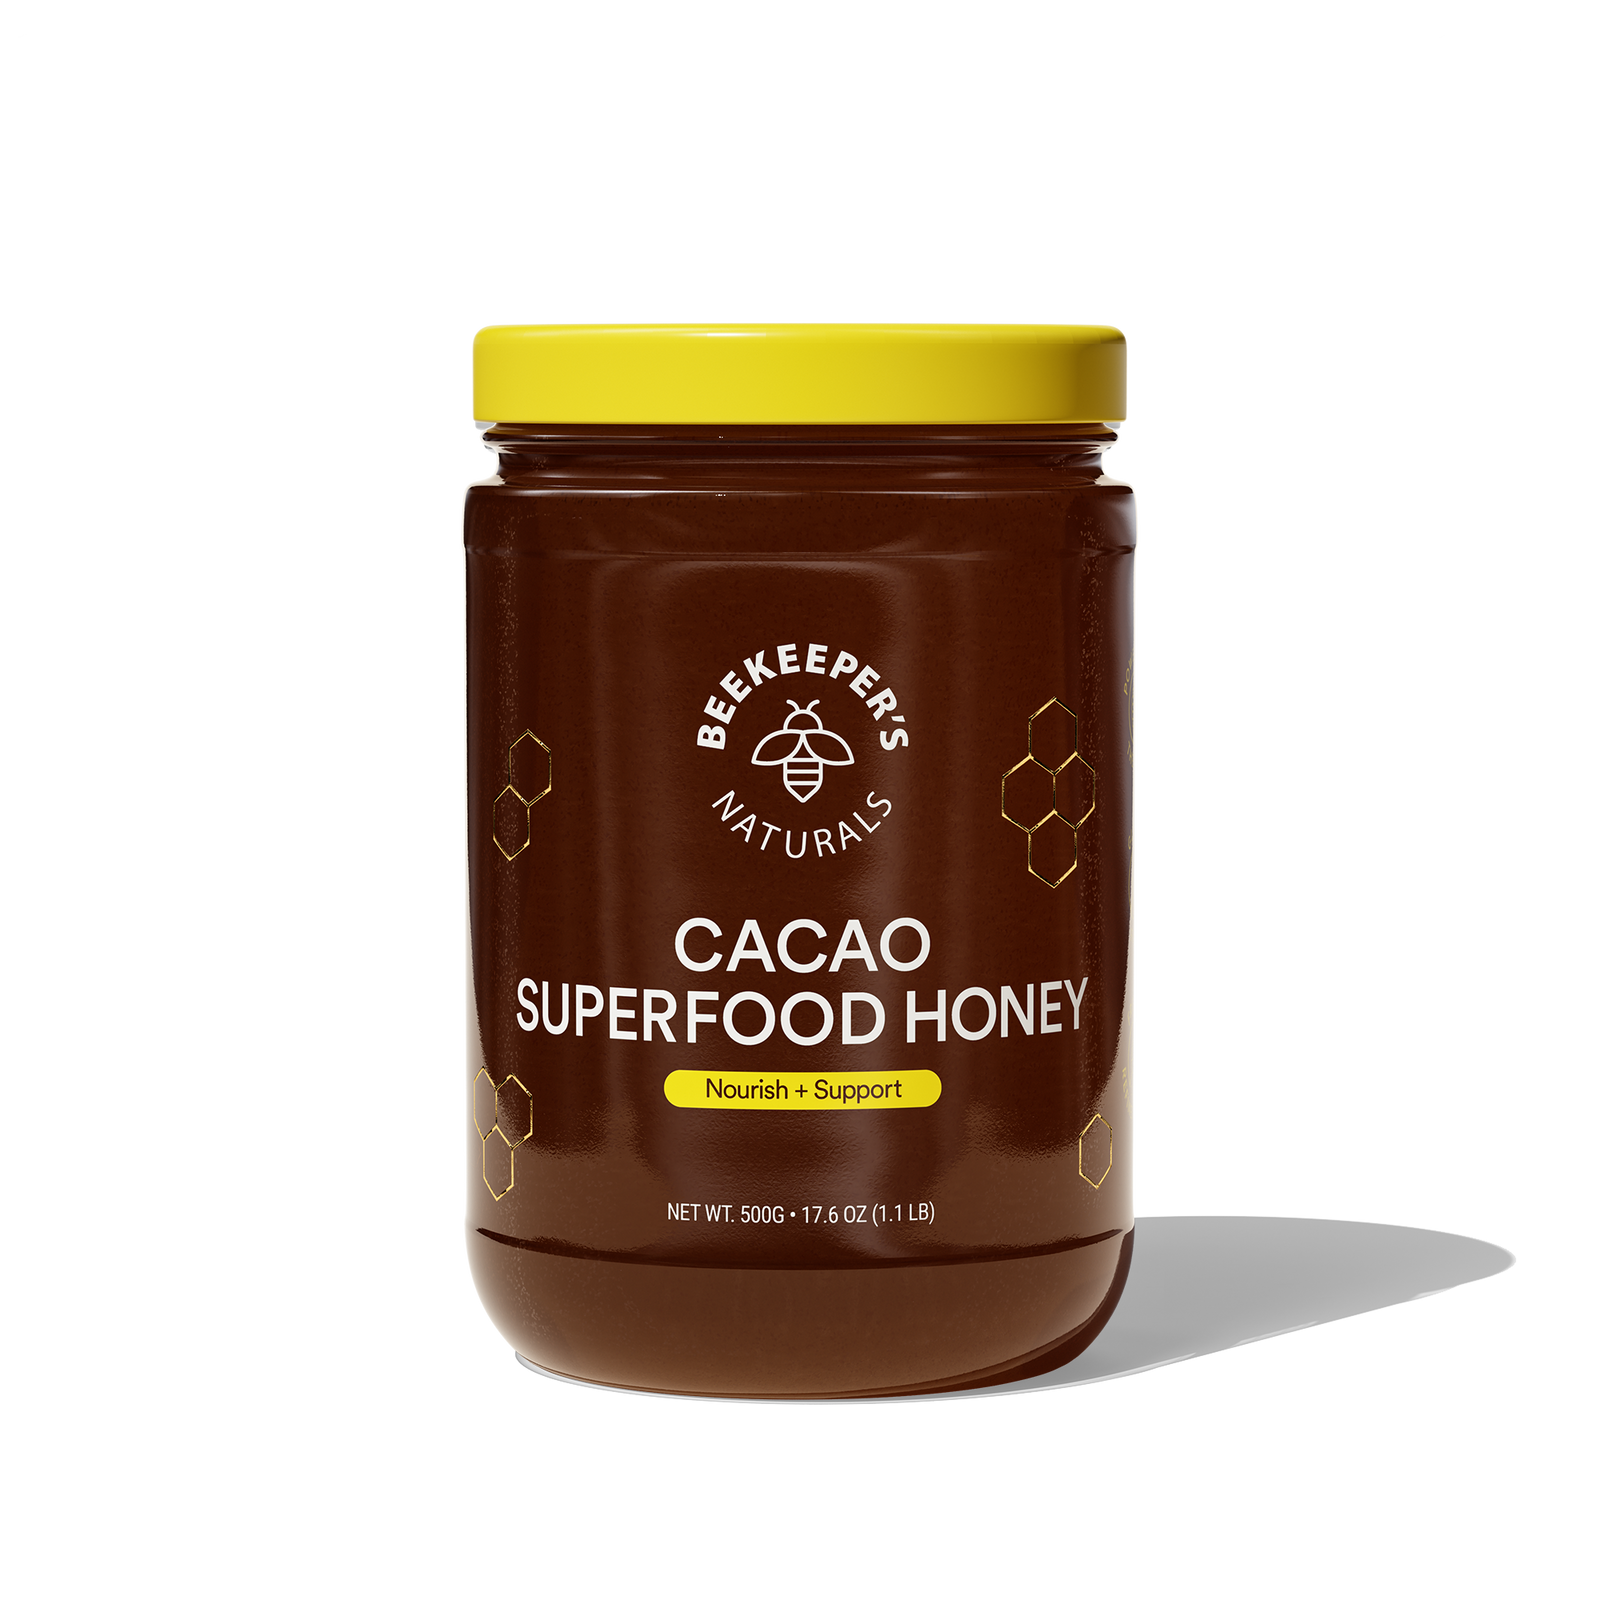 Cacao Superfood Honey - Cacao Superfood Honey